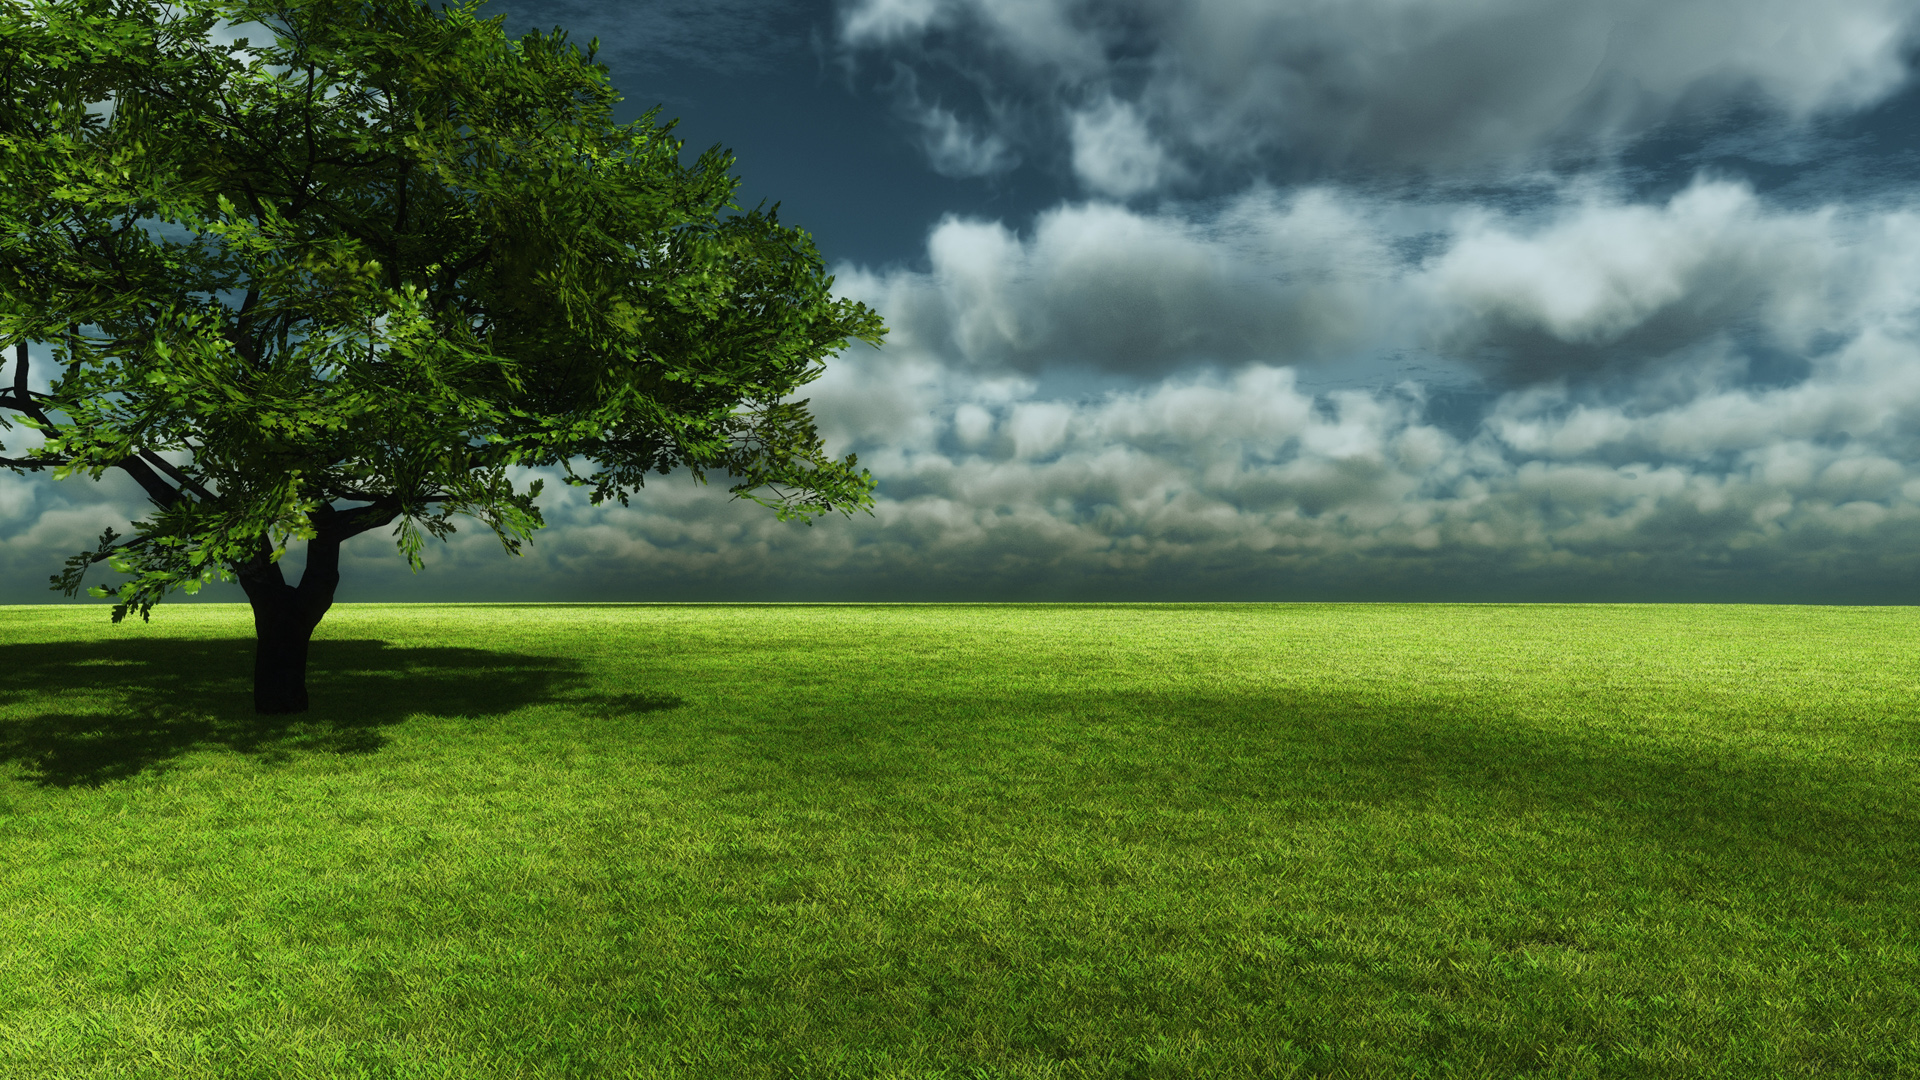 Скачать обои бесплатно Деревья, Трава, Небо, Облака, Горизонт, Дерево, Поле, Ландшафт, Земля/природа картинка на рабочий стол ПК